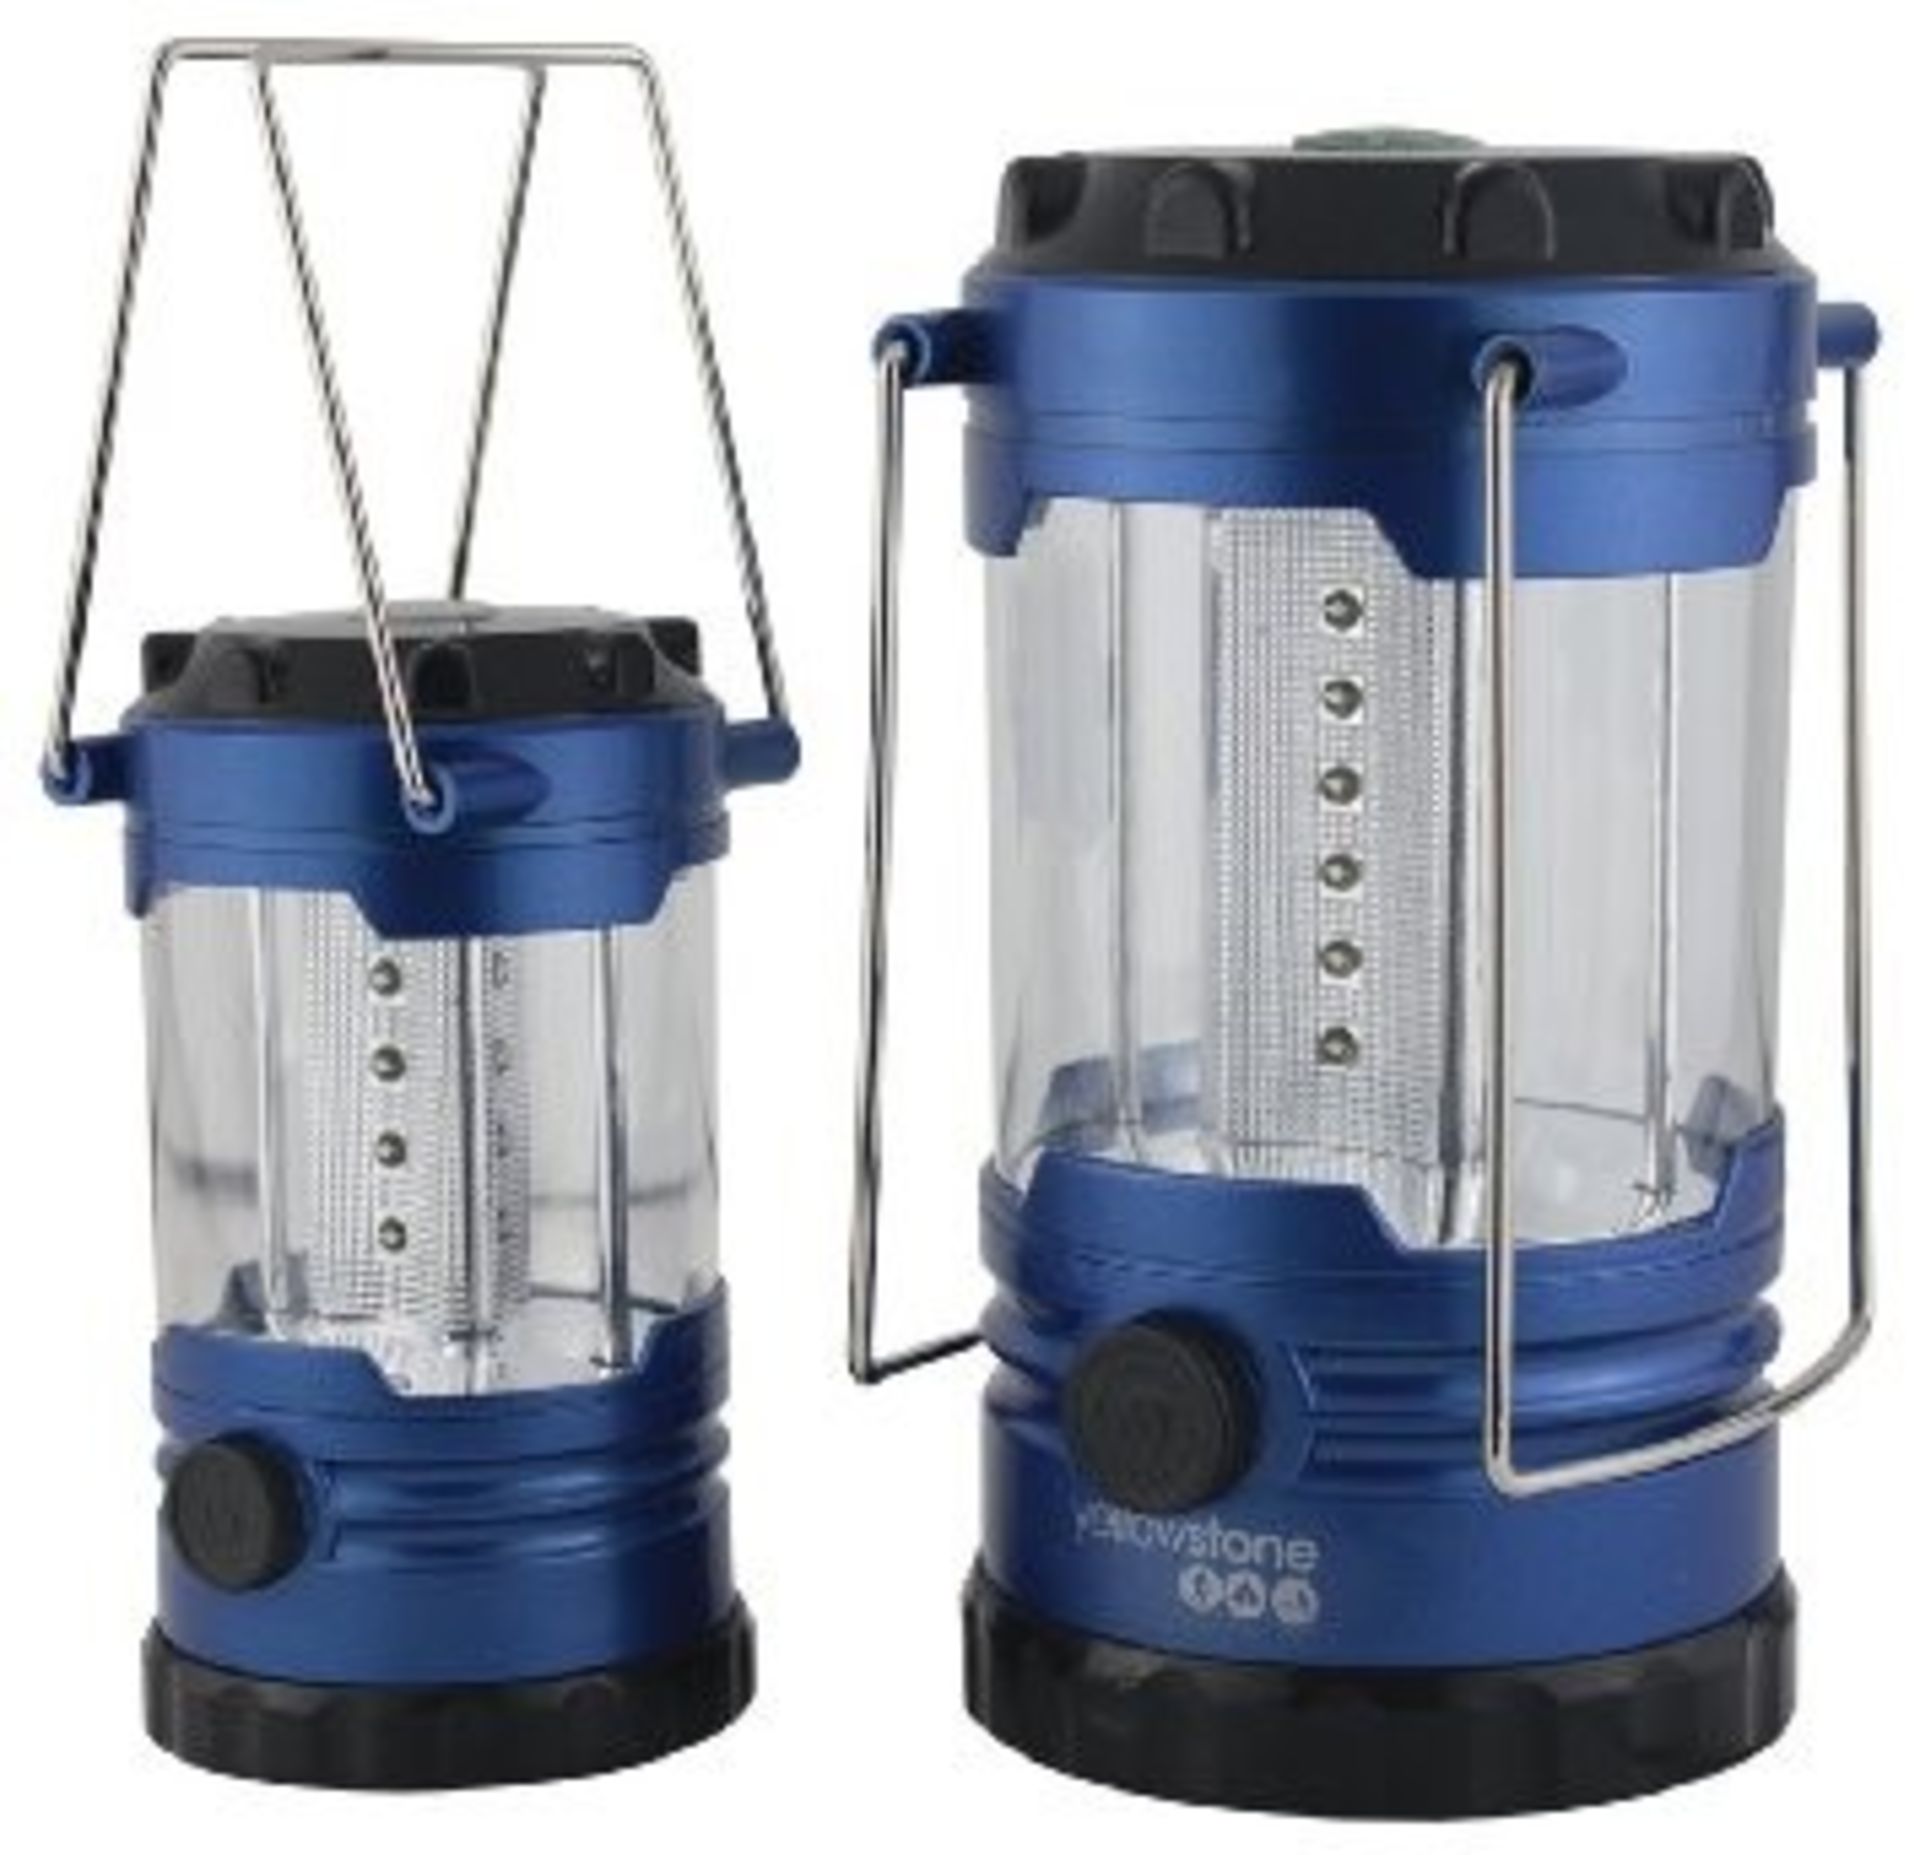 1 x Yellowstone Family Camping LED Lantern Light Set - 2 Lanterns Included - 360 Illumination -